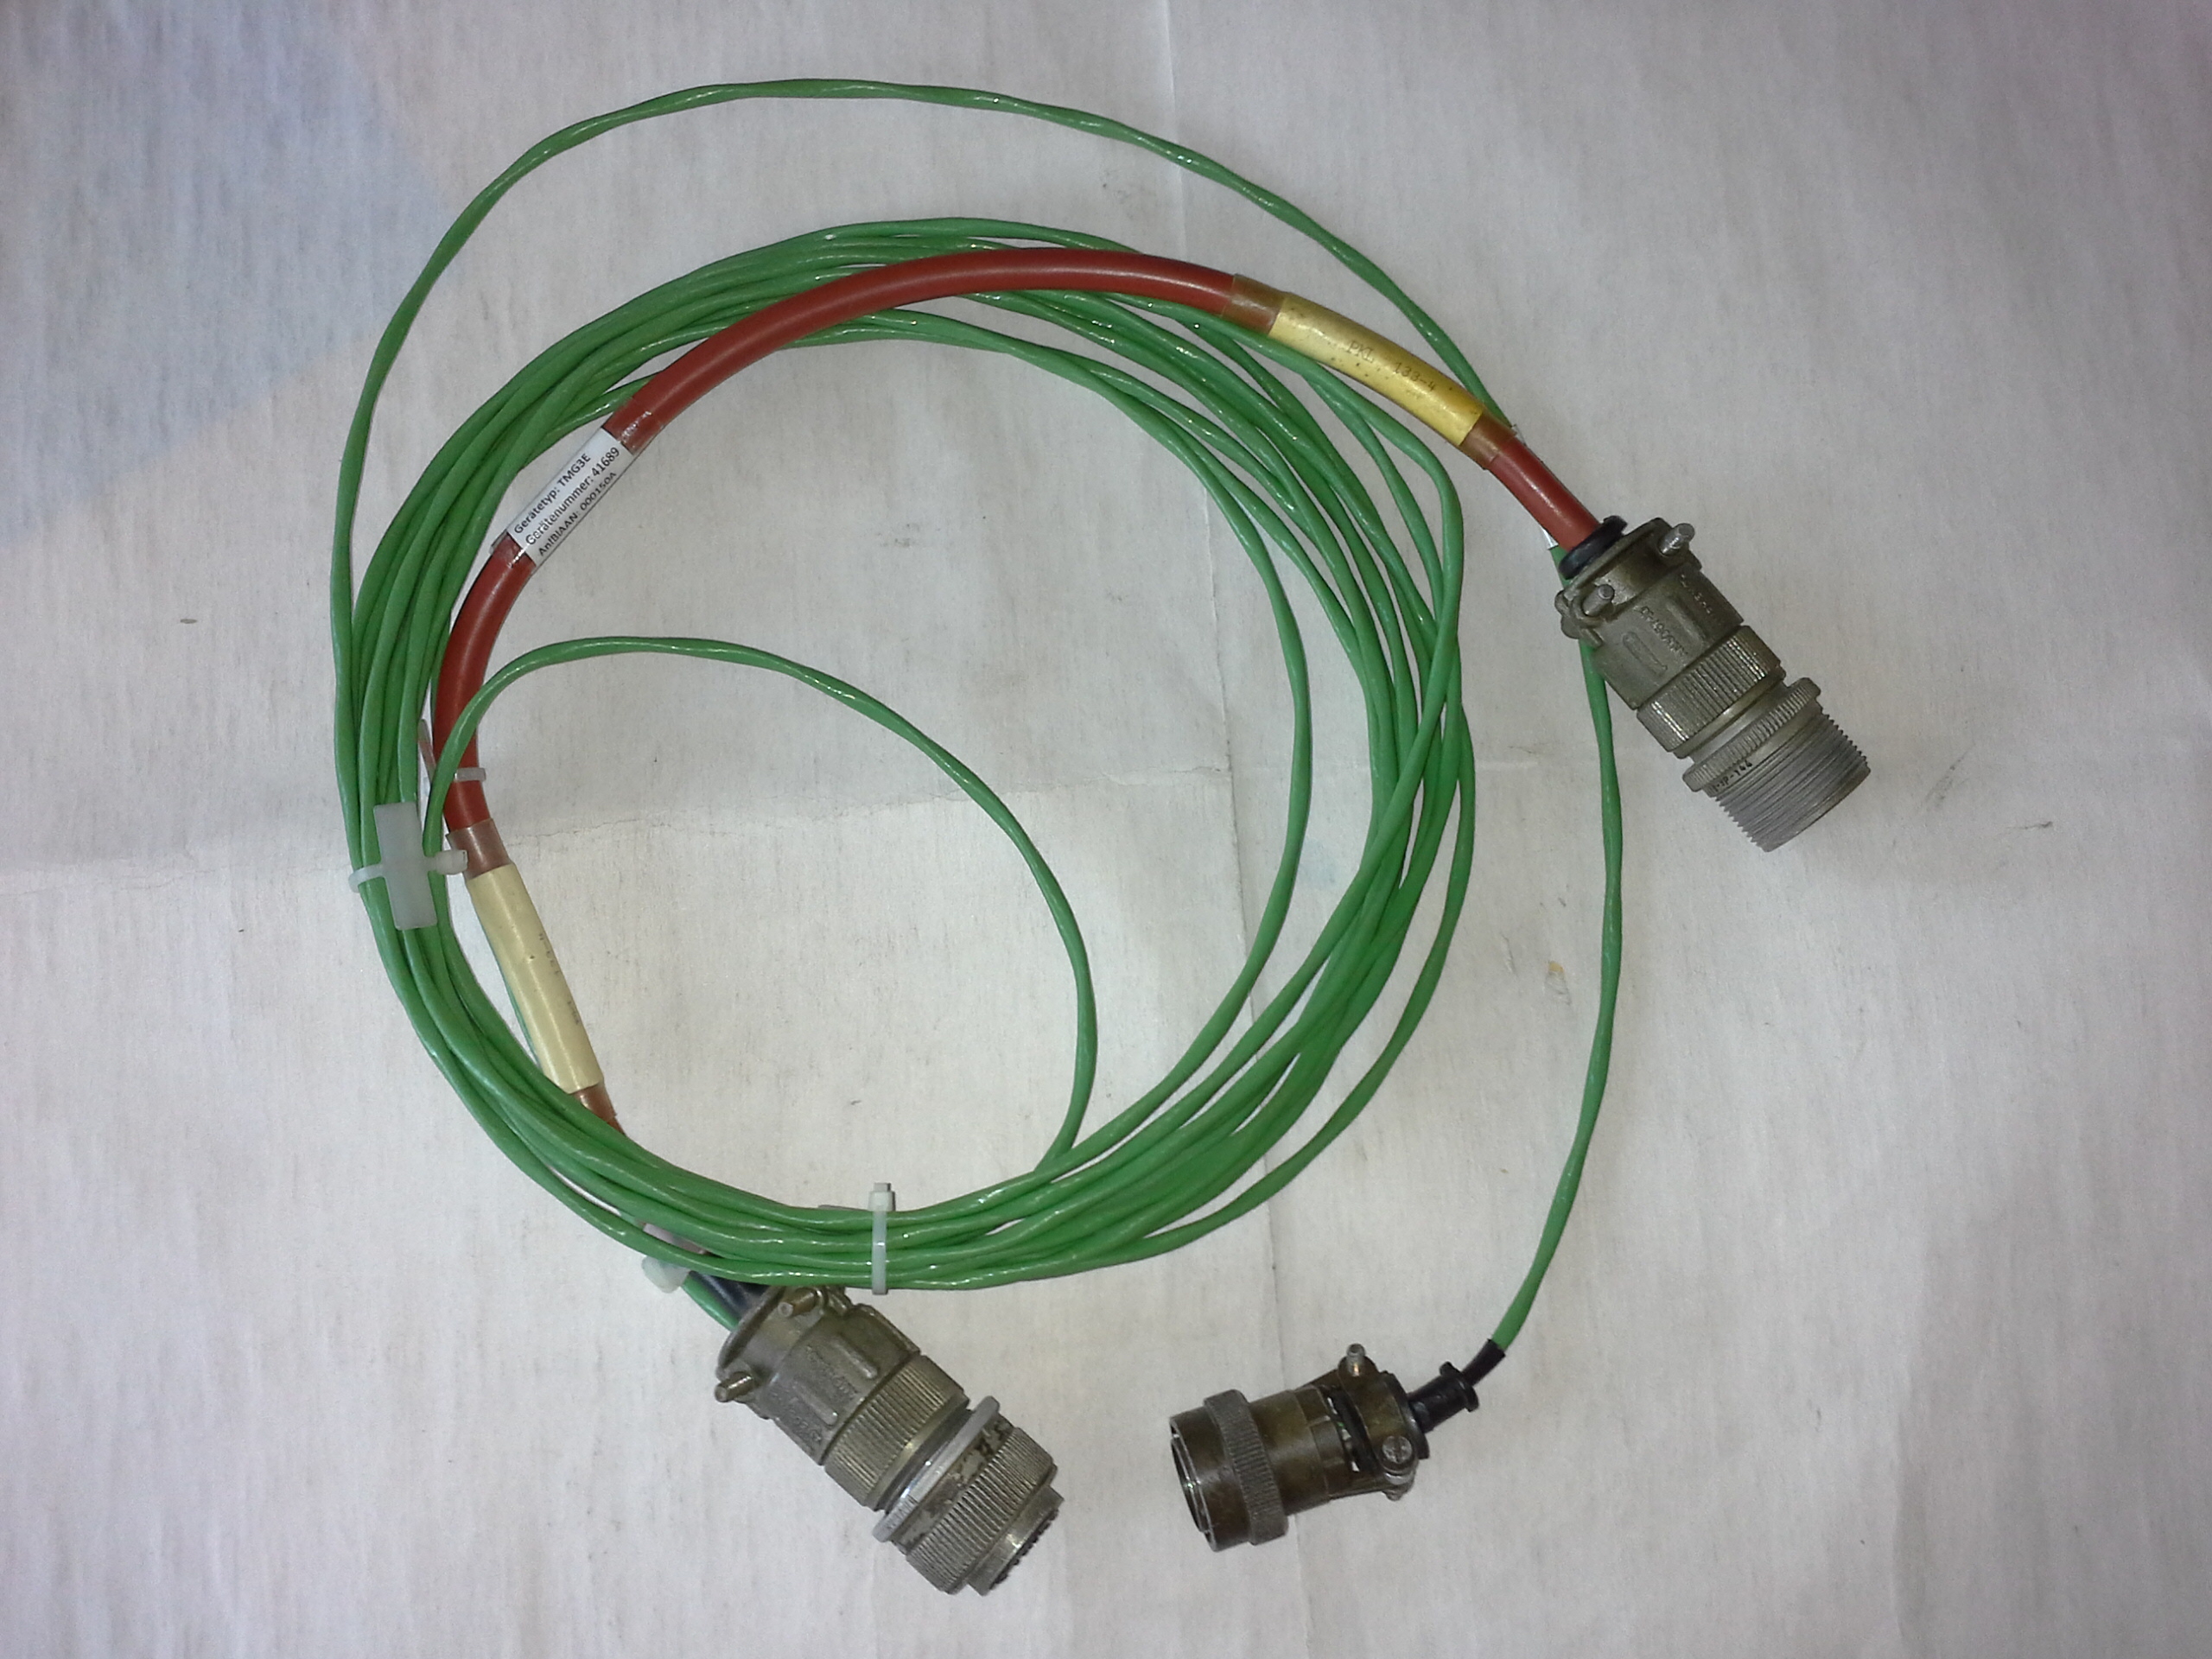 PKL 133-4 Kabel für EGT-Anlage-Prüfung bei stehendem Triebwerk / Werkstatt